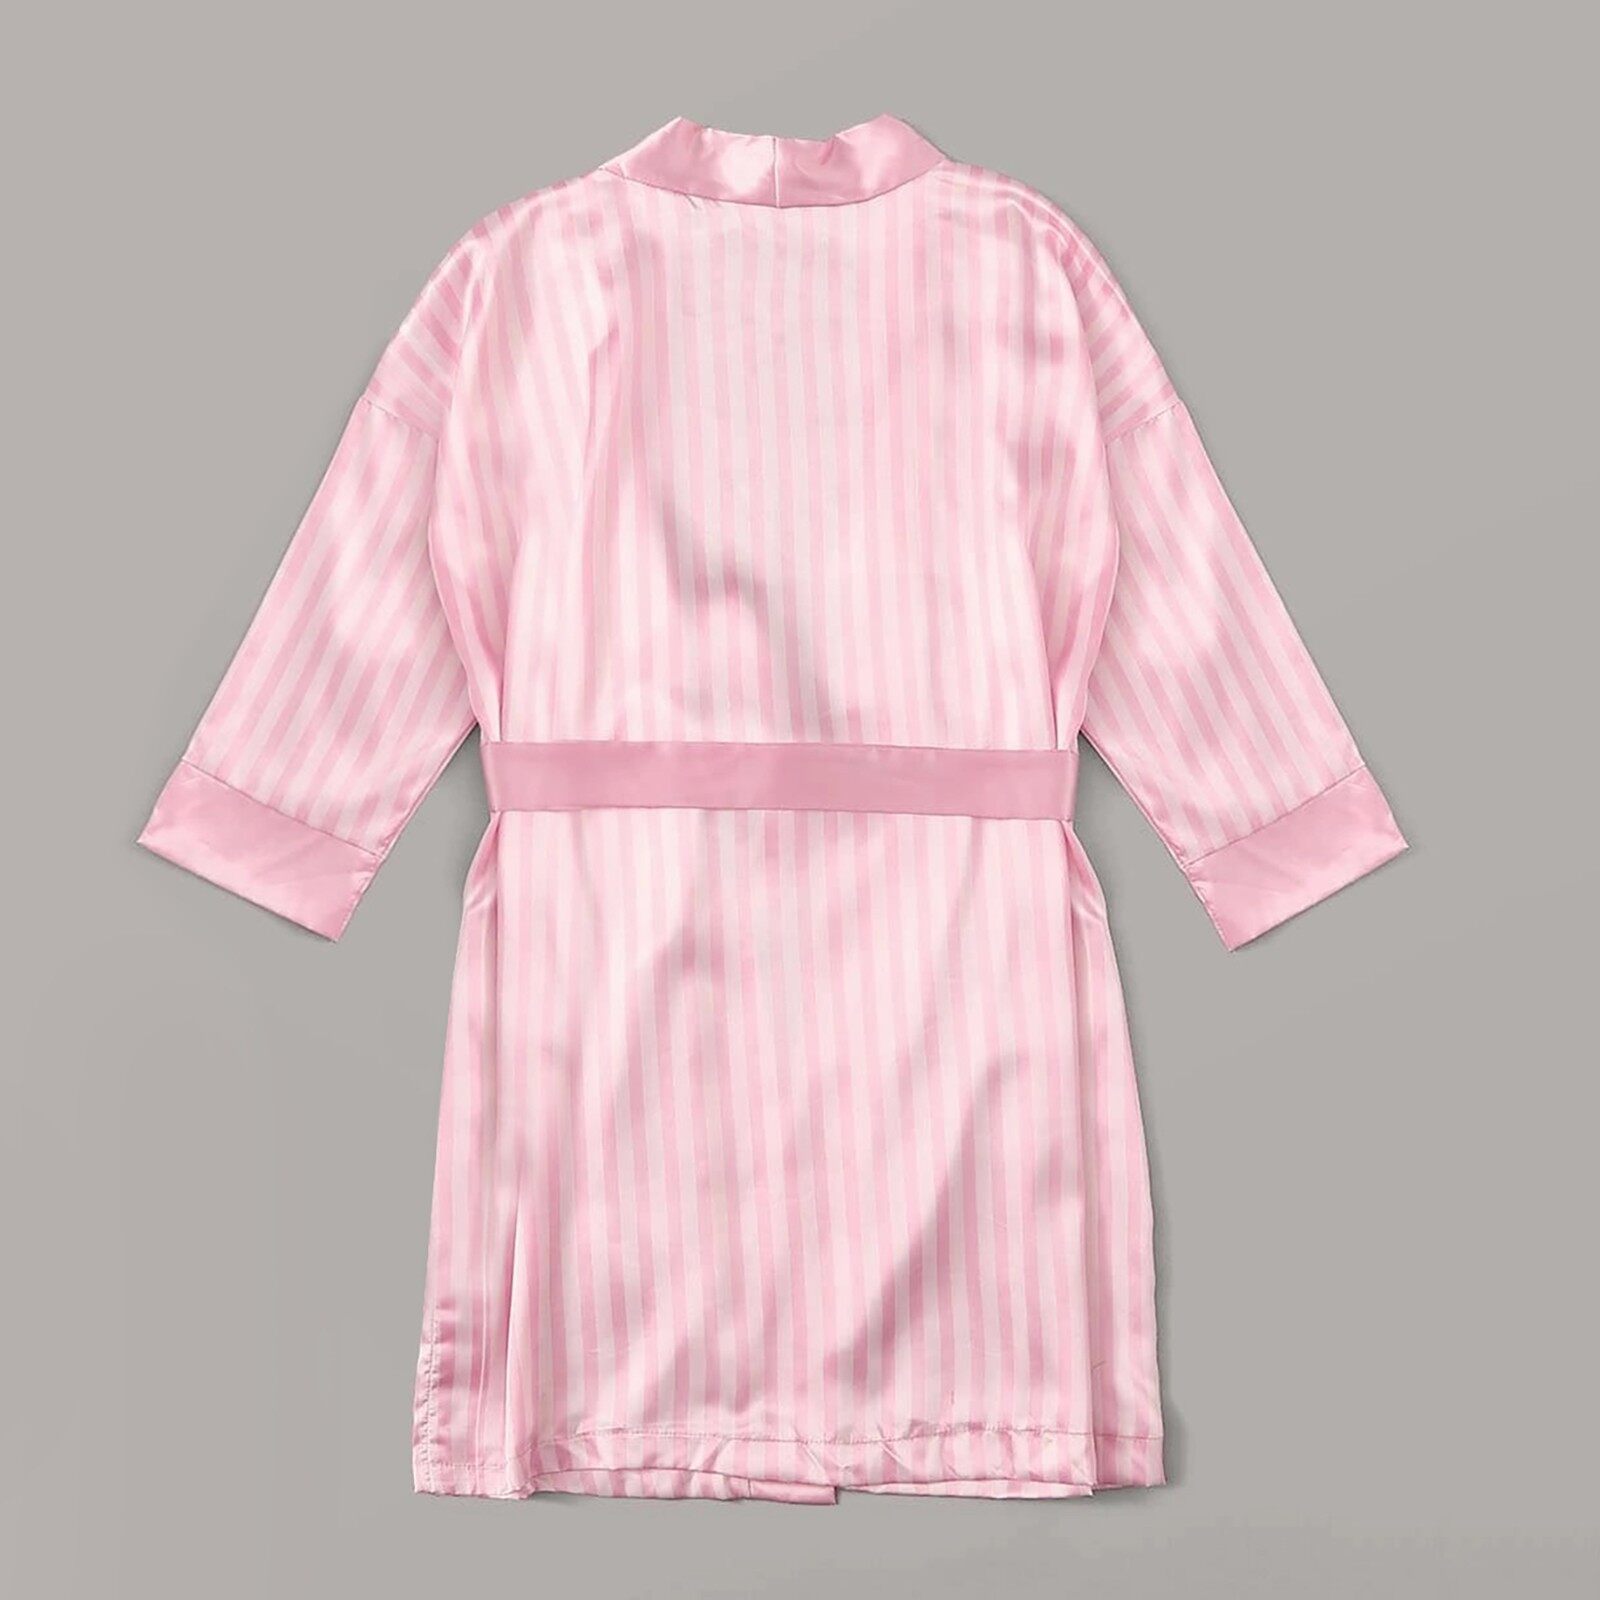 FDHRJ Đồ Ngủ Bằng Lụa Satin Váy Ngủ Cho Nữ Áo Choàng Đồ Lót Đồ Ngủ Bộ Váy Ngoại Cỡ Màu Hồng Polyester Gợi Cảm 4